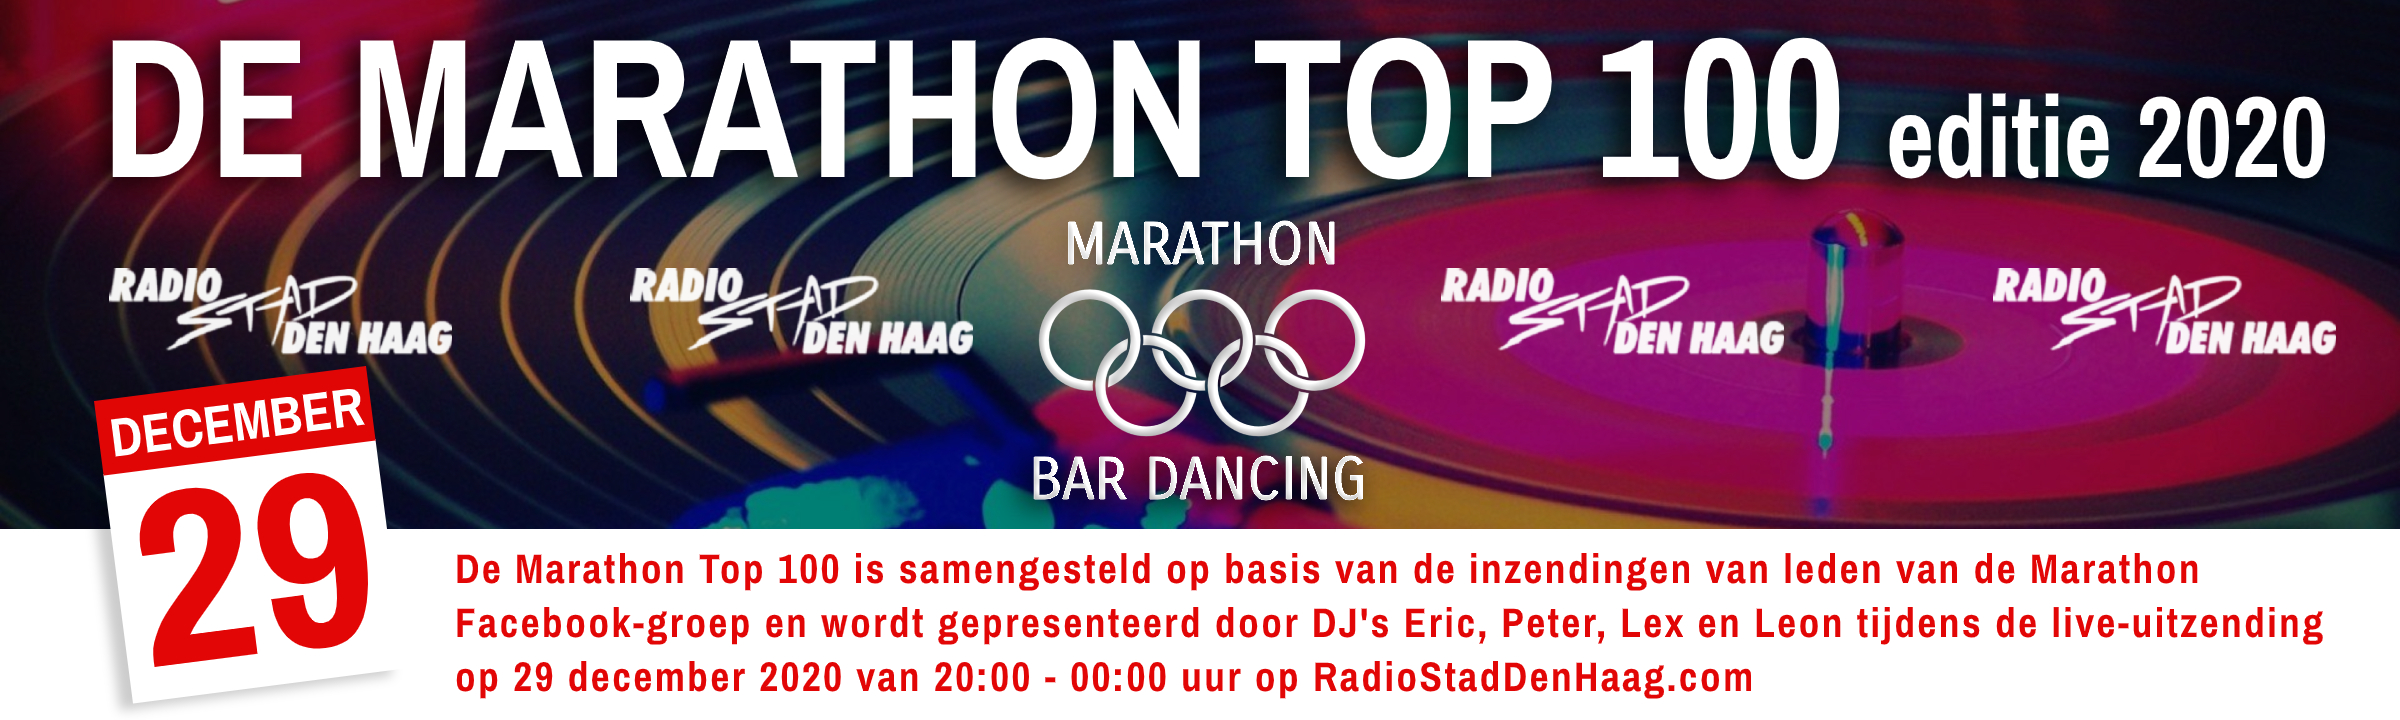 Header All Time Marathon Top 100 by Dirk van den Broek